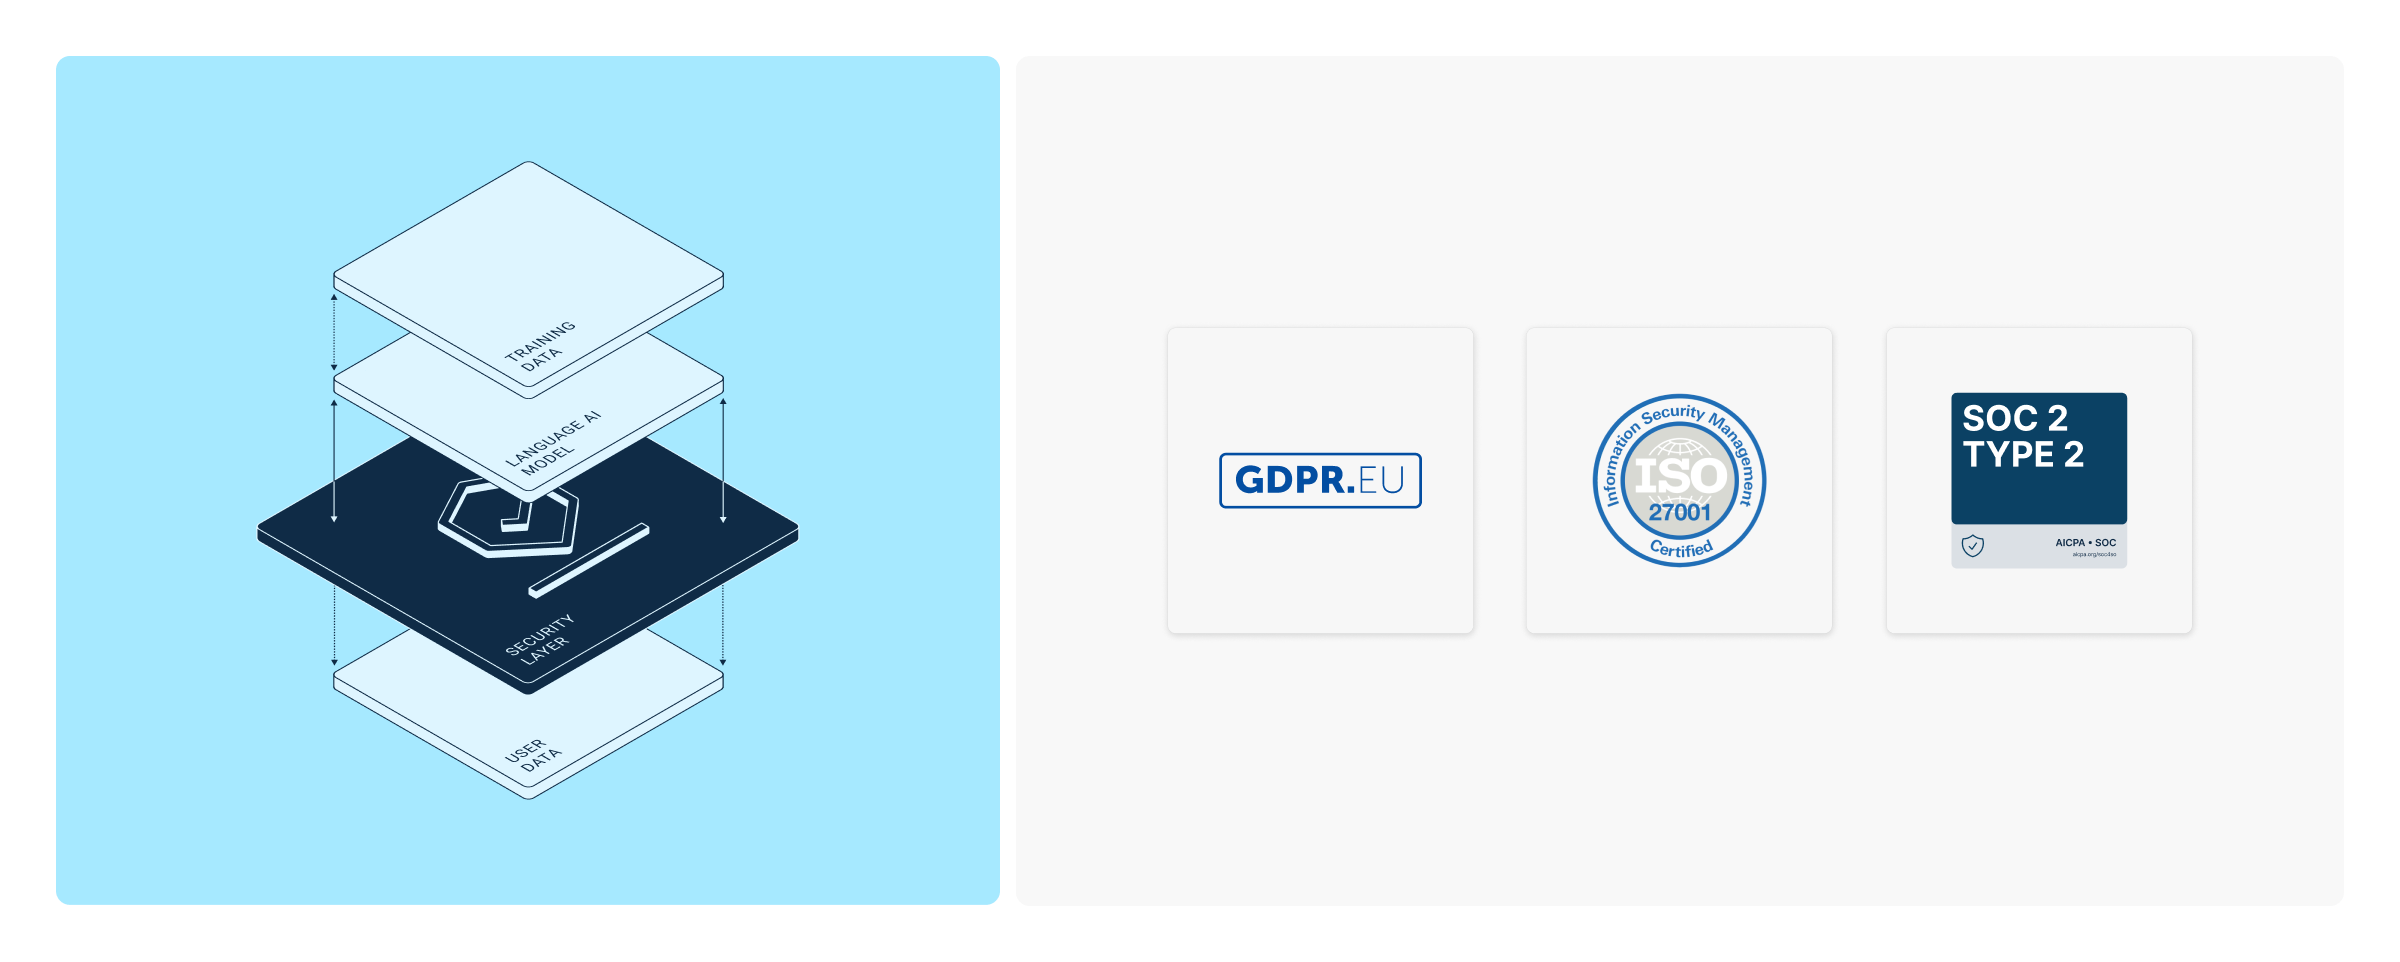 データ保護認証ロゴを用い、DeepL Write Proセキュリティ対策を示したイラスト